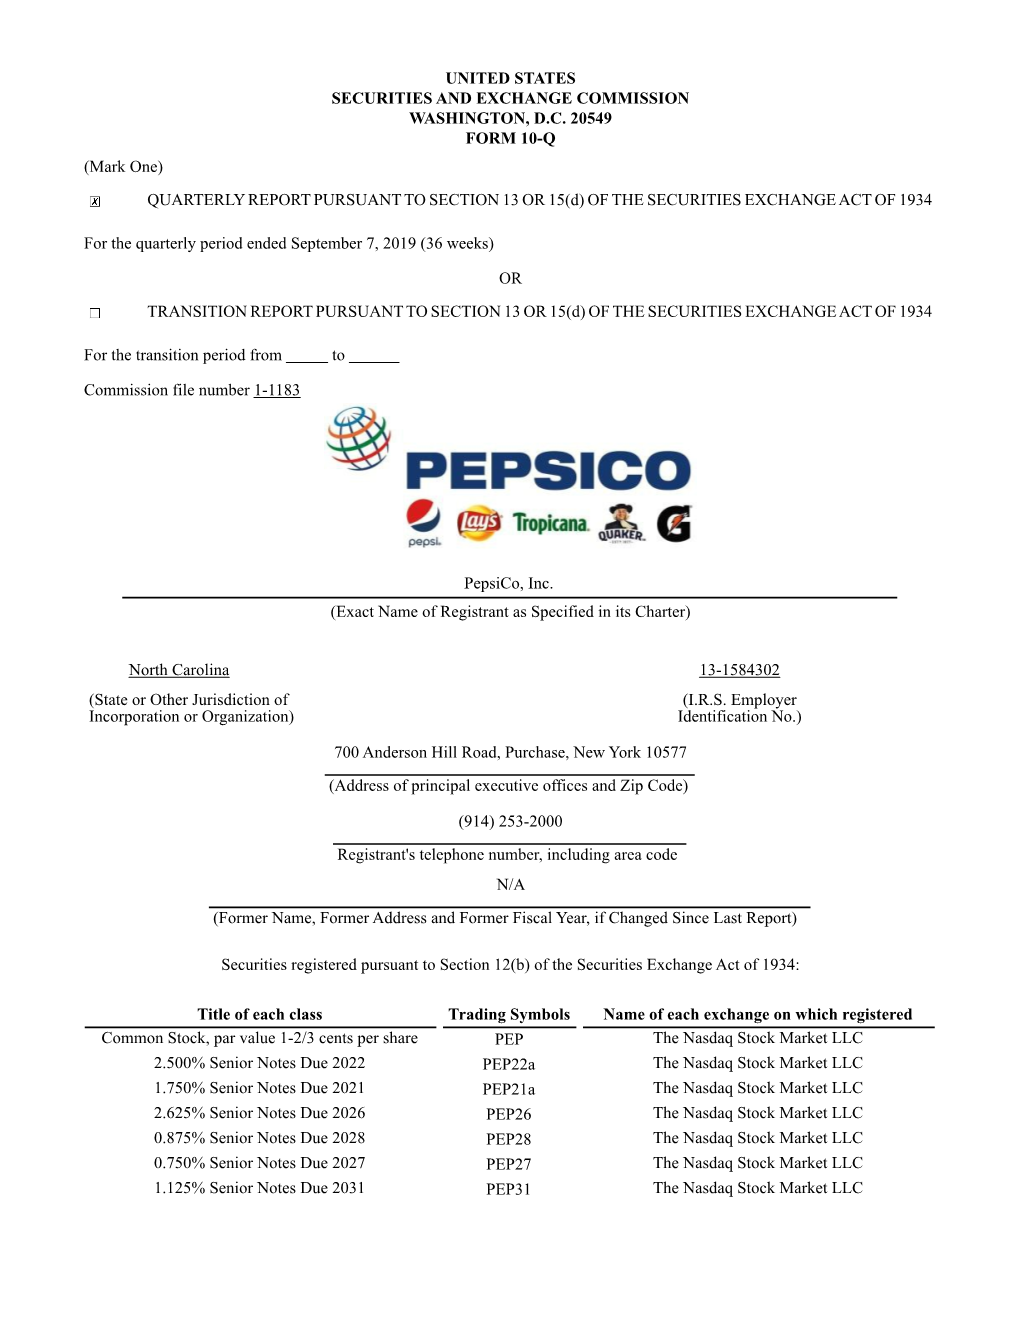 Pepsico Q3 2019 10-Q